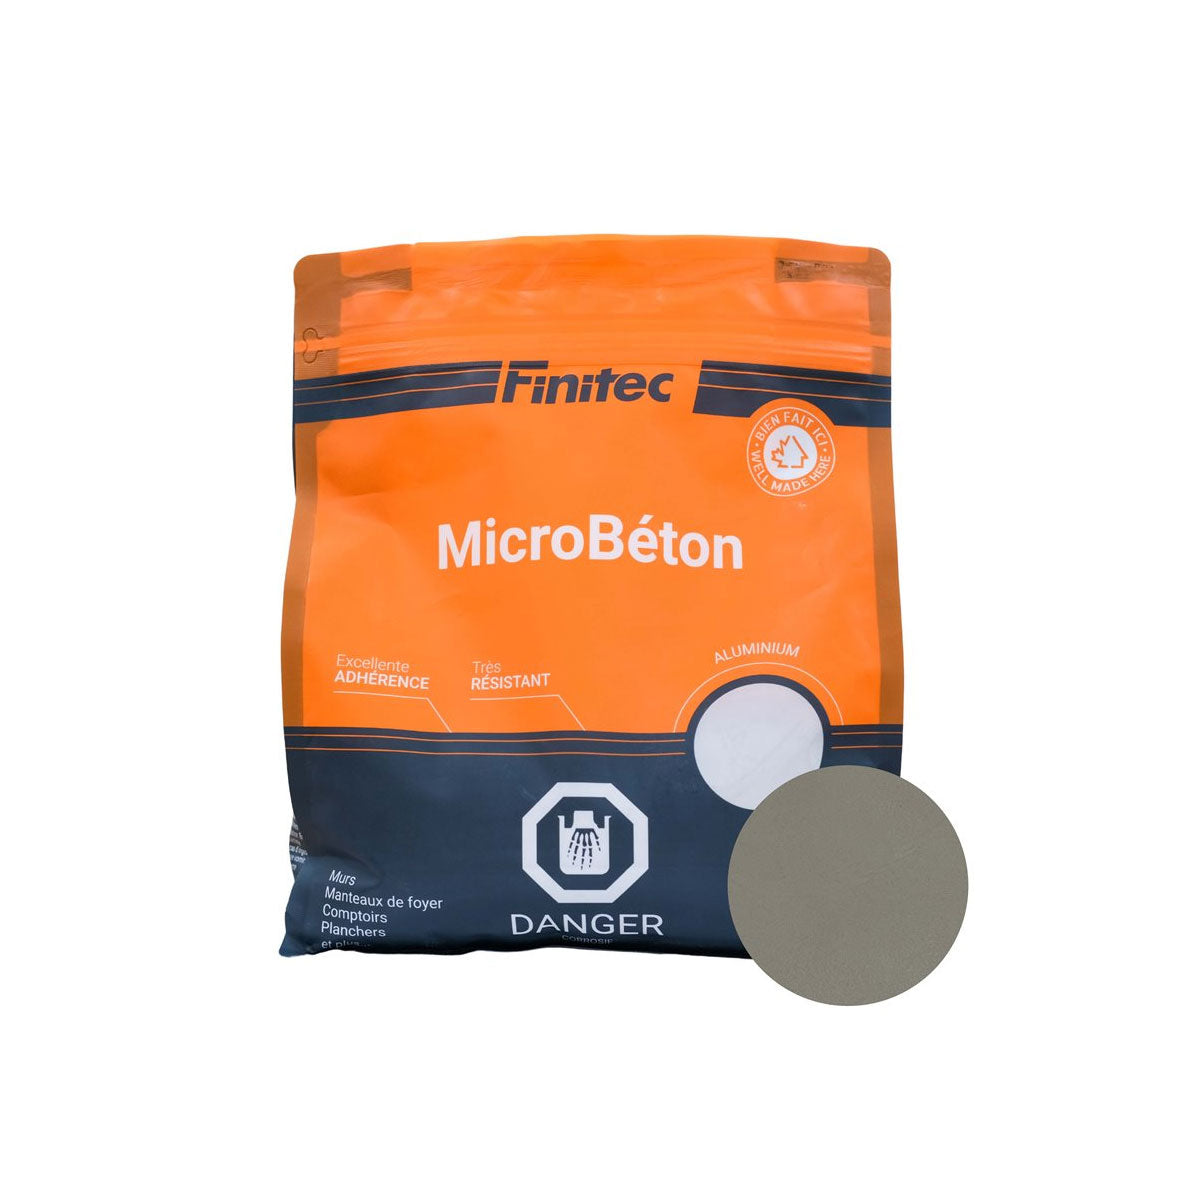 MicroBéton Finitec various colors 3.5 kg and 18 kg